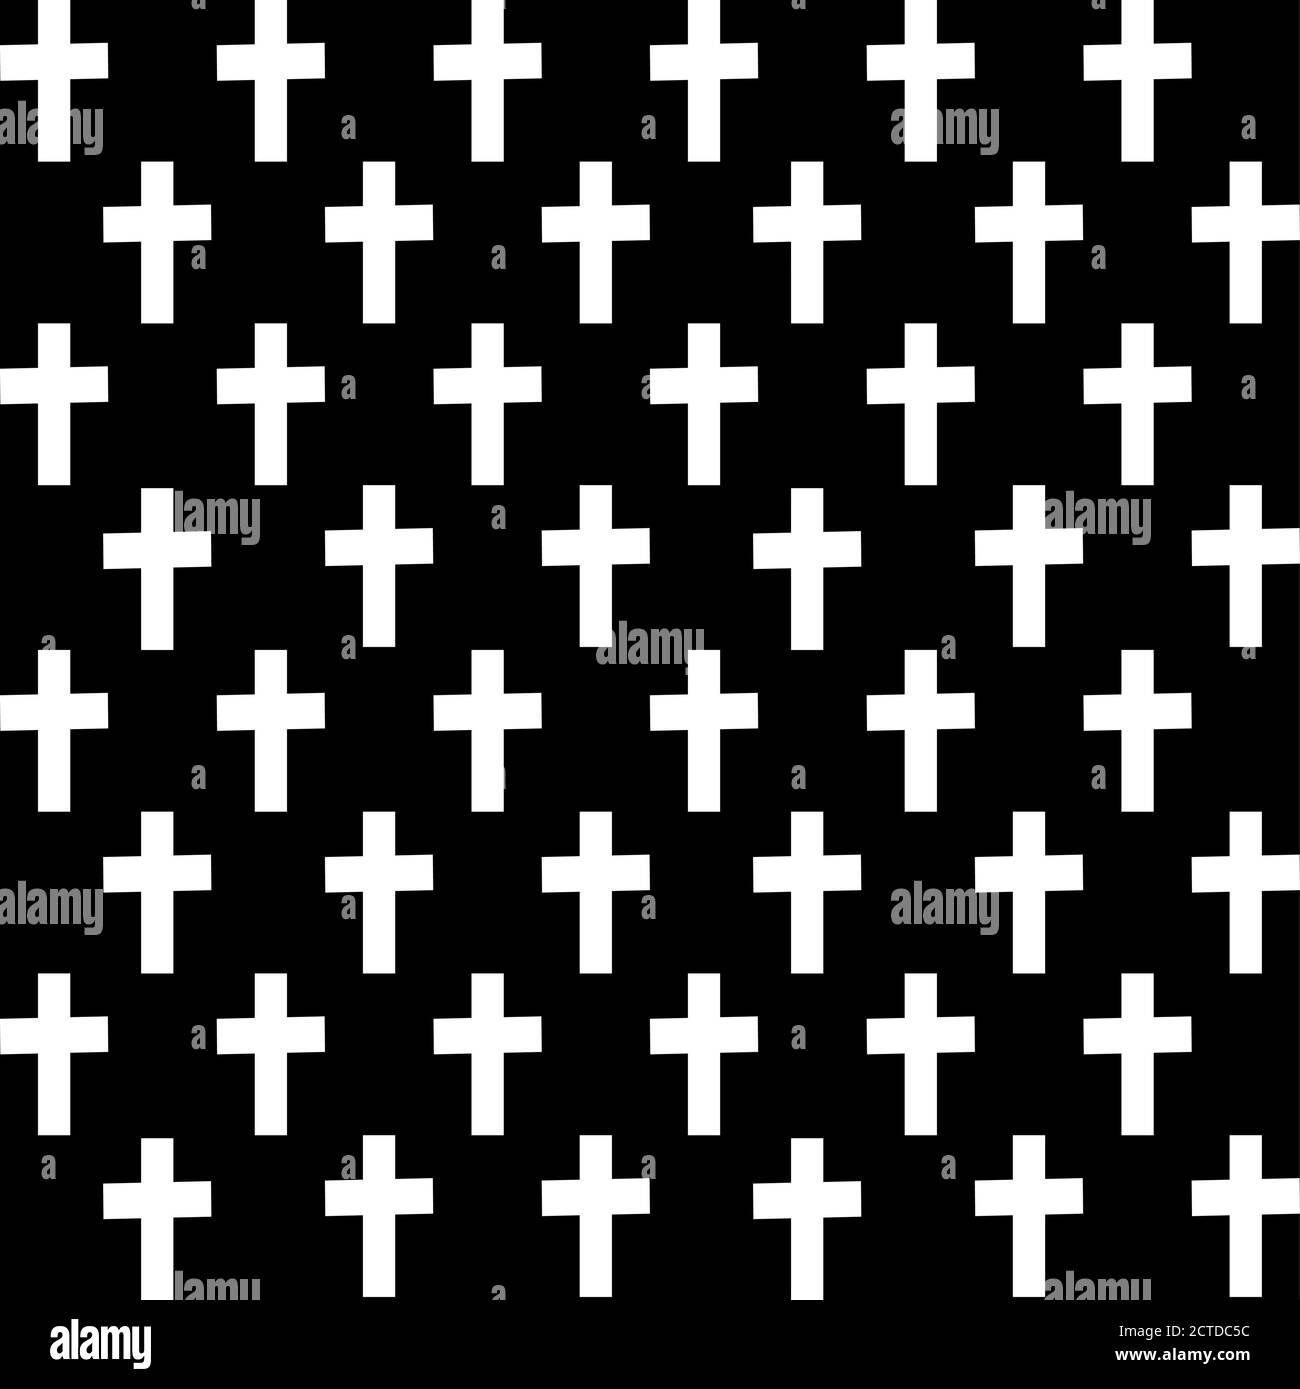 White cross on black background. Seamless pattern. Line vector illustration. Stock Vector